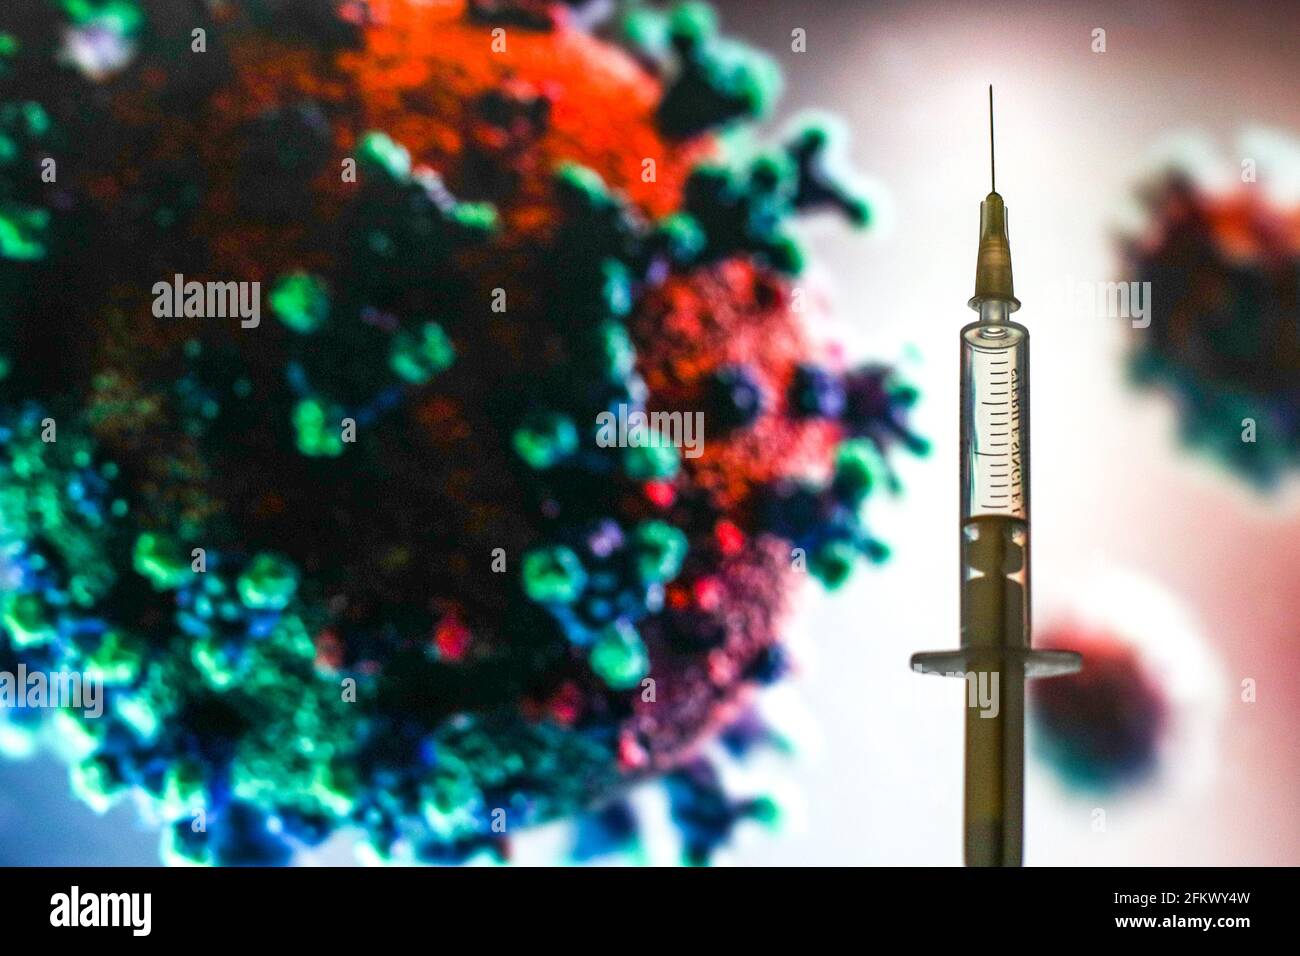 In dieser Abbildung ist eine medizinische Spritze vor einem mikroskopischen Bild des Coronavirus zu sehen. Stockfoto